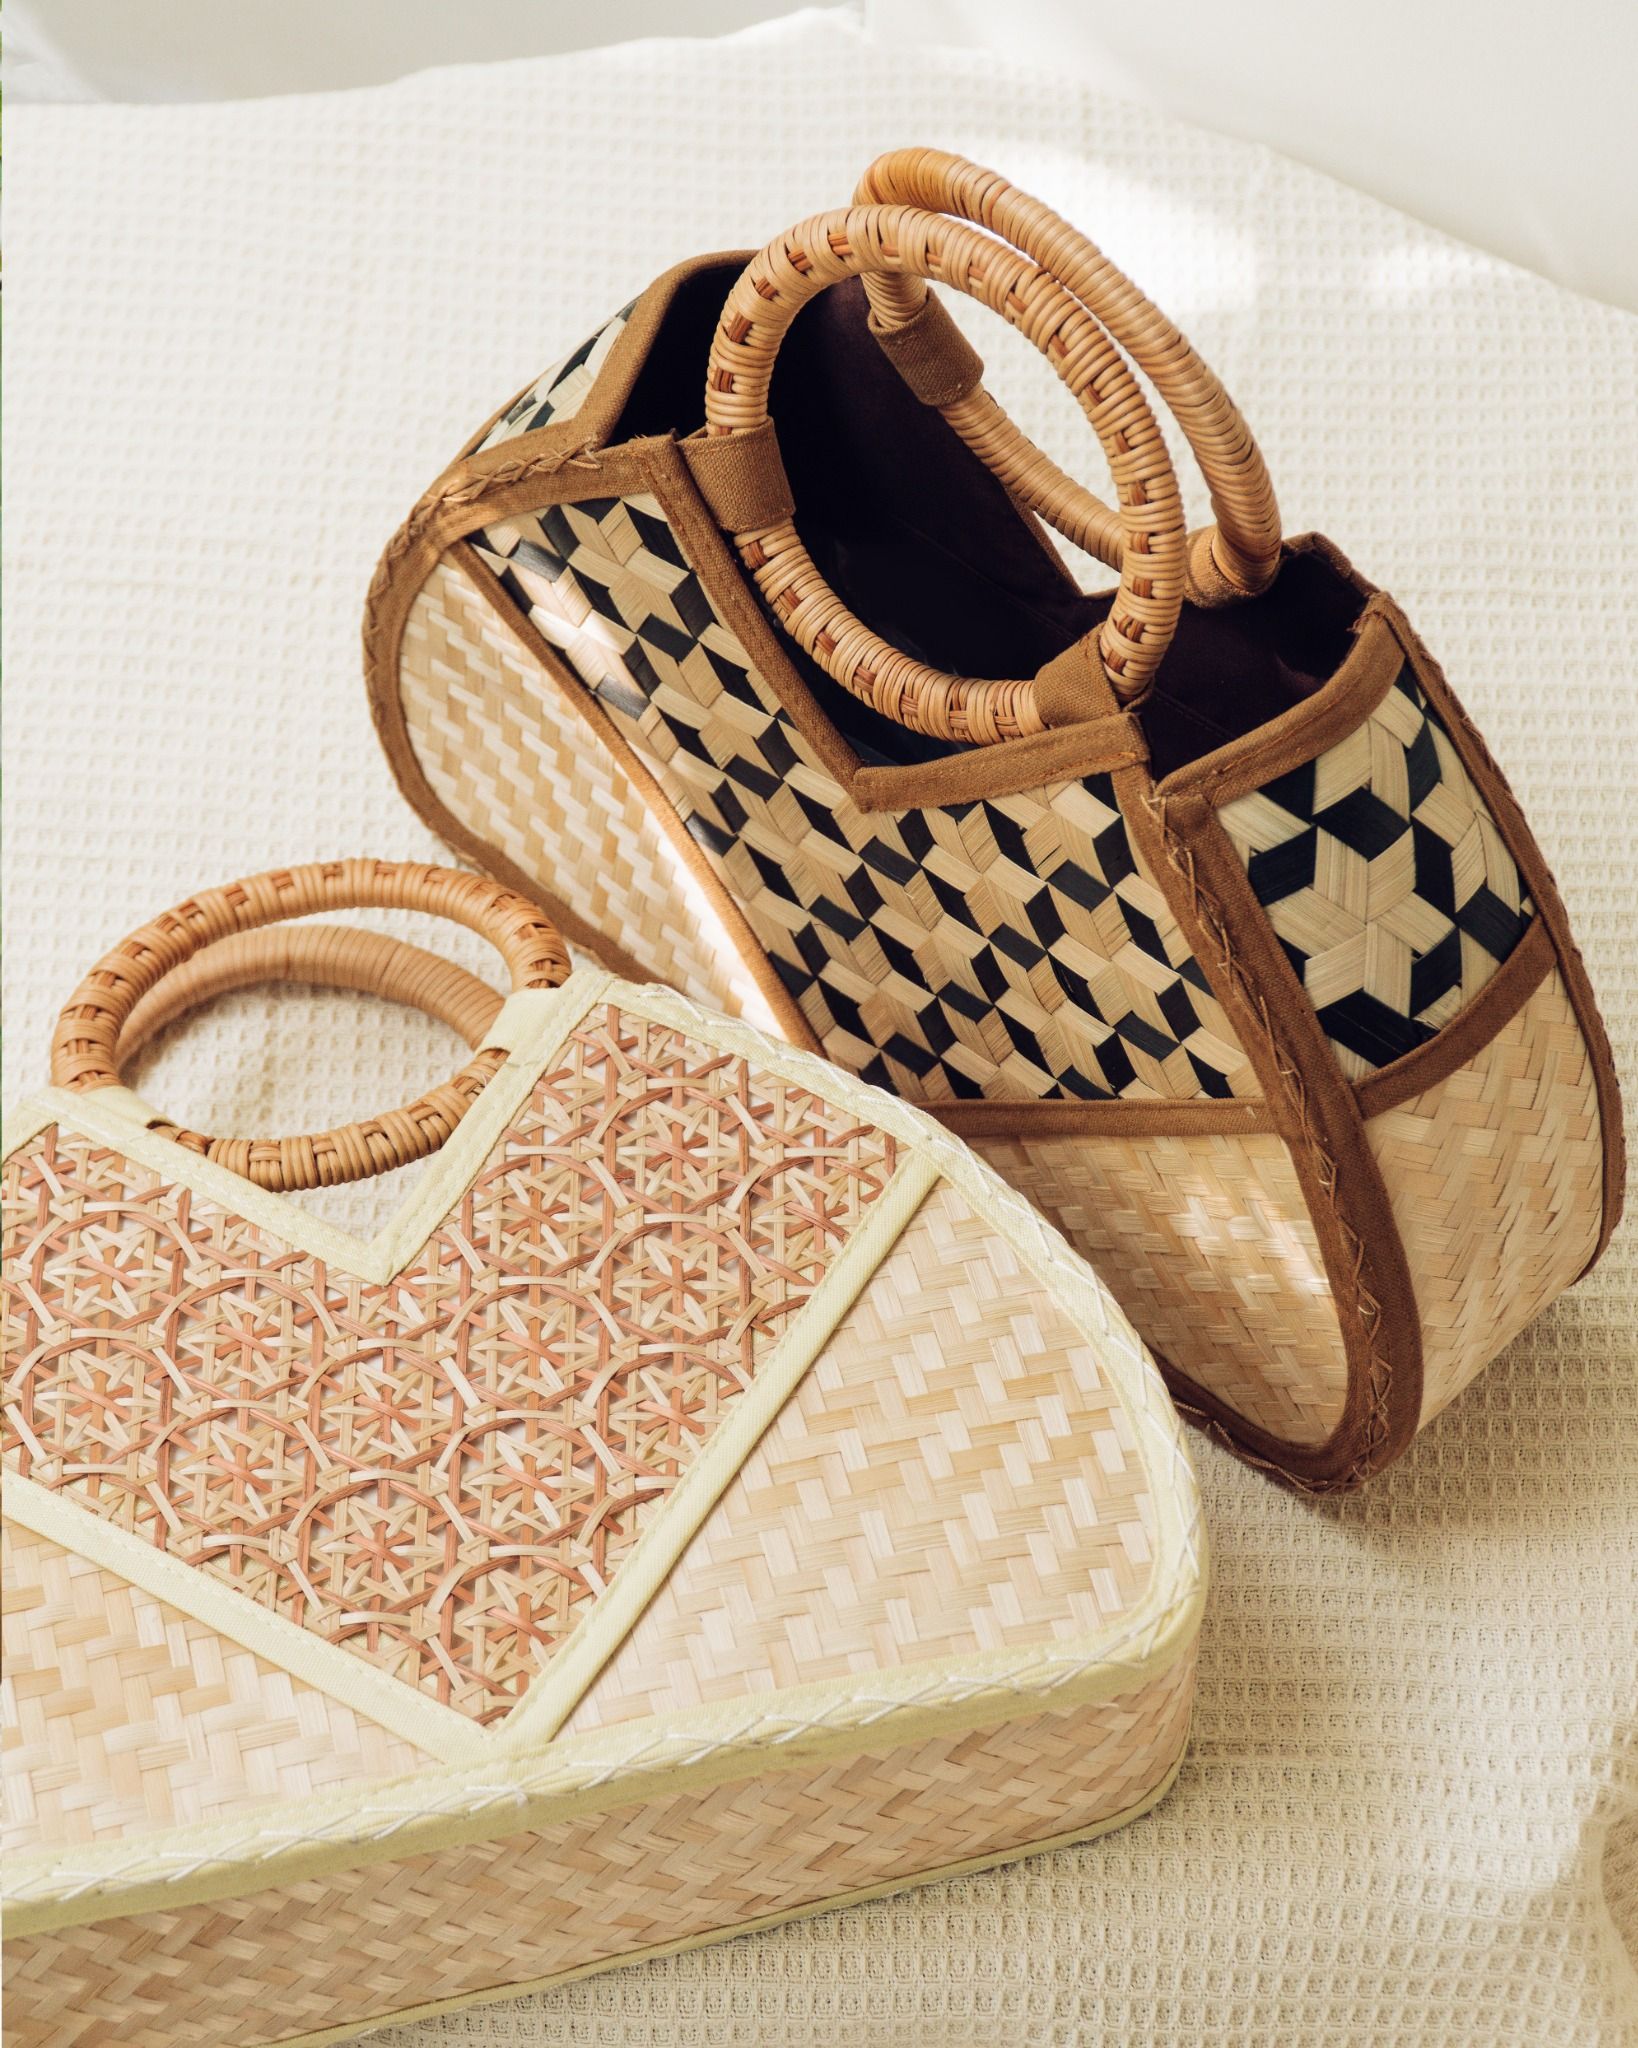  Túi vải họa tiết tre đan thủ công quai cầm gỗ kiểu dáng thanh lịch trang nhã - Mã sản phẩm HB03 